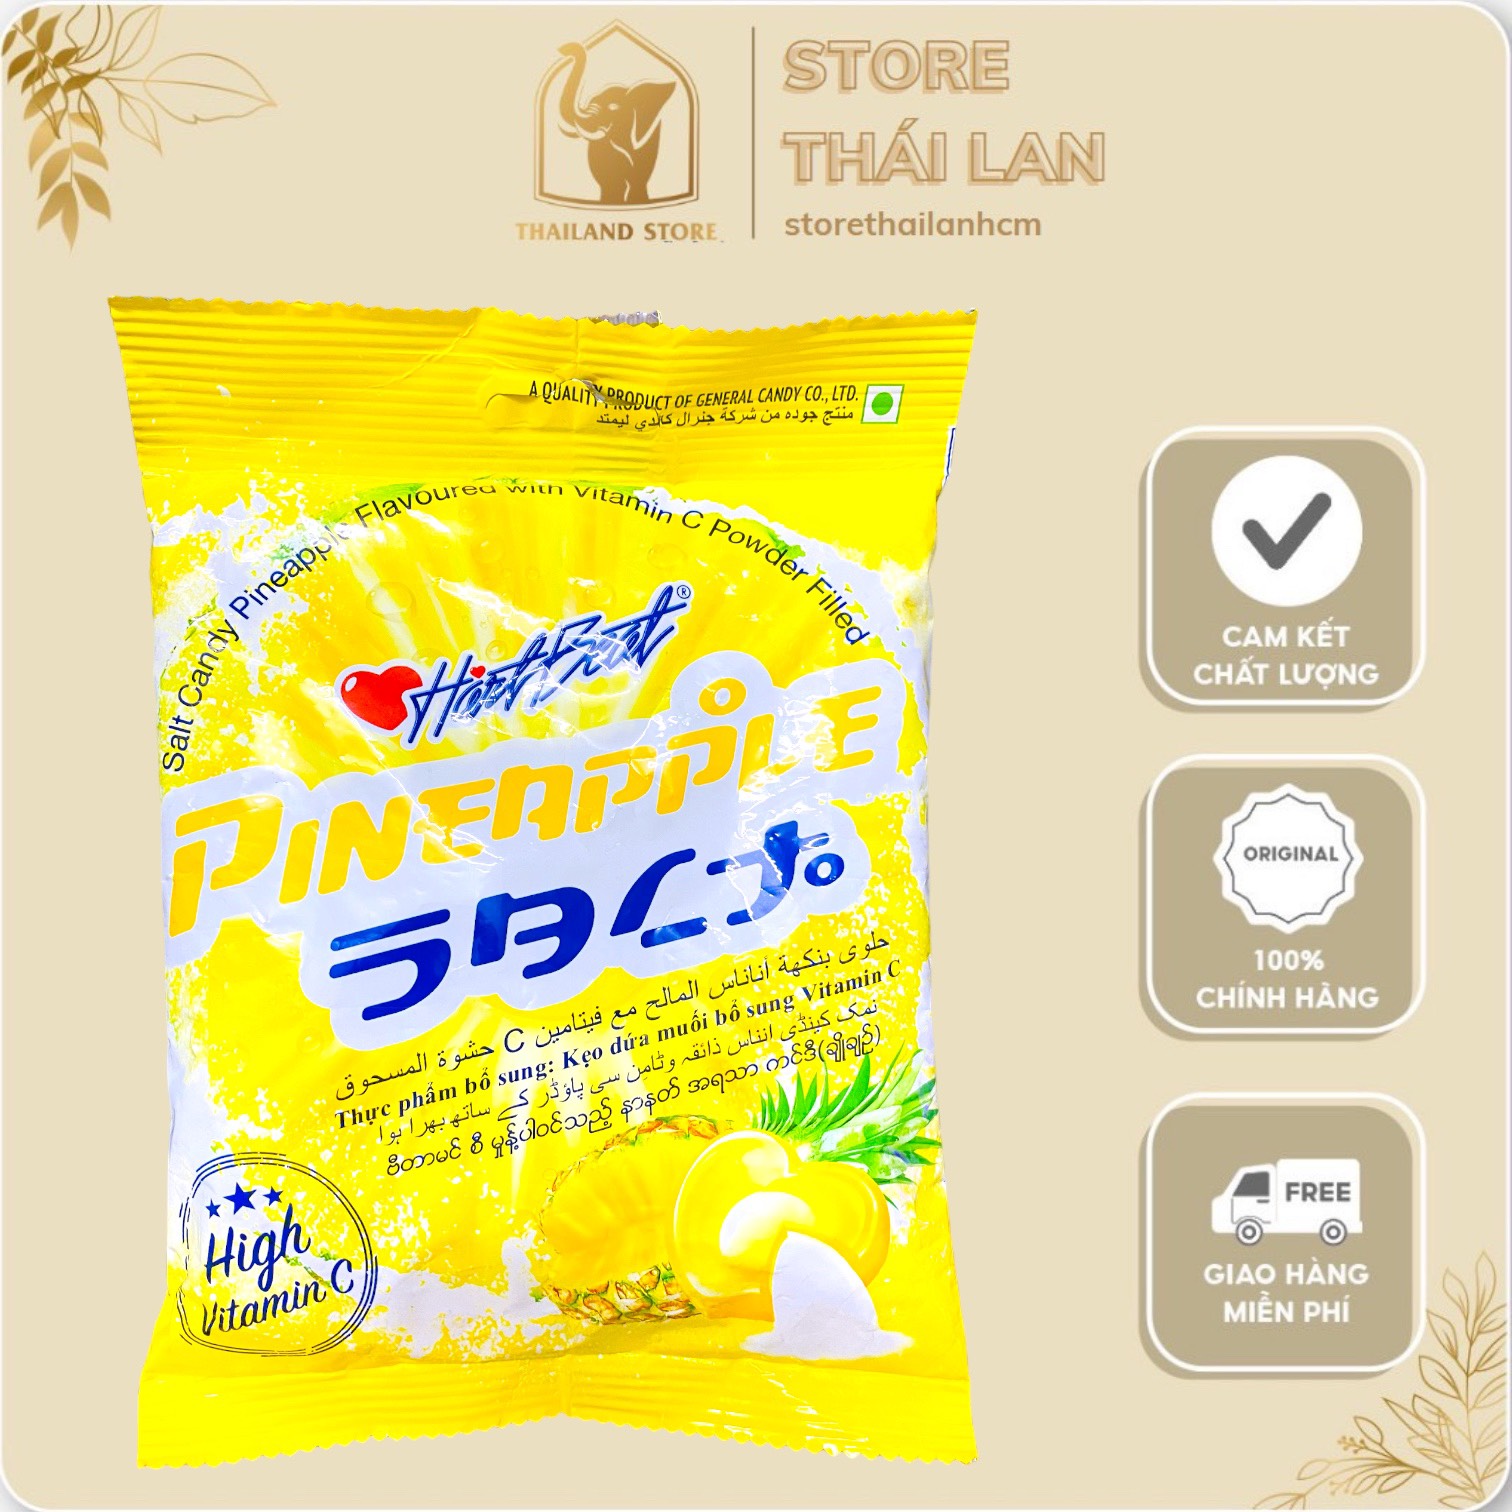 CHÍNH HÃNG Kẹo chanh muối HartBeat Thái Lan vị DỨA 120g bổ sung Vitamin C